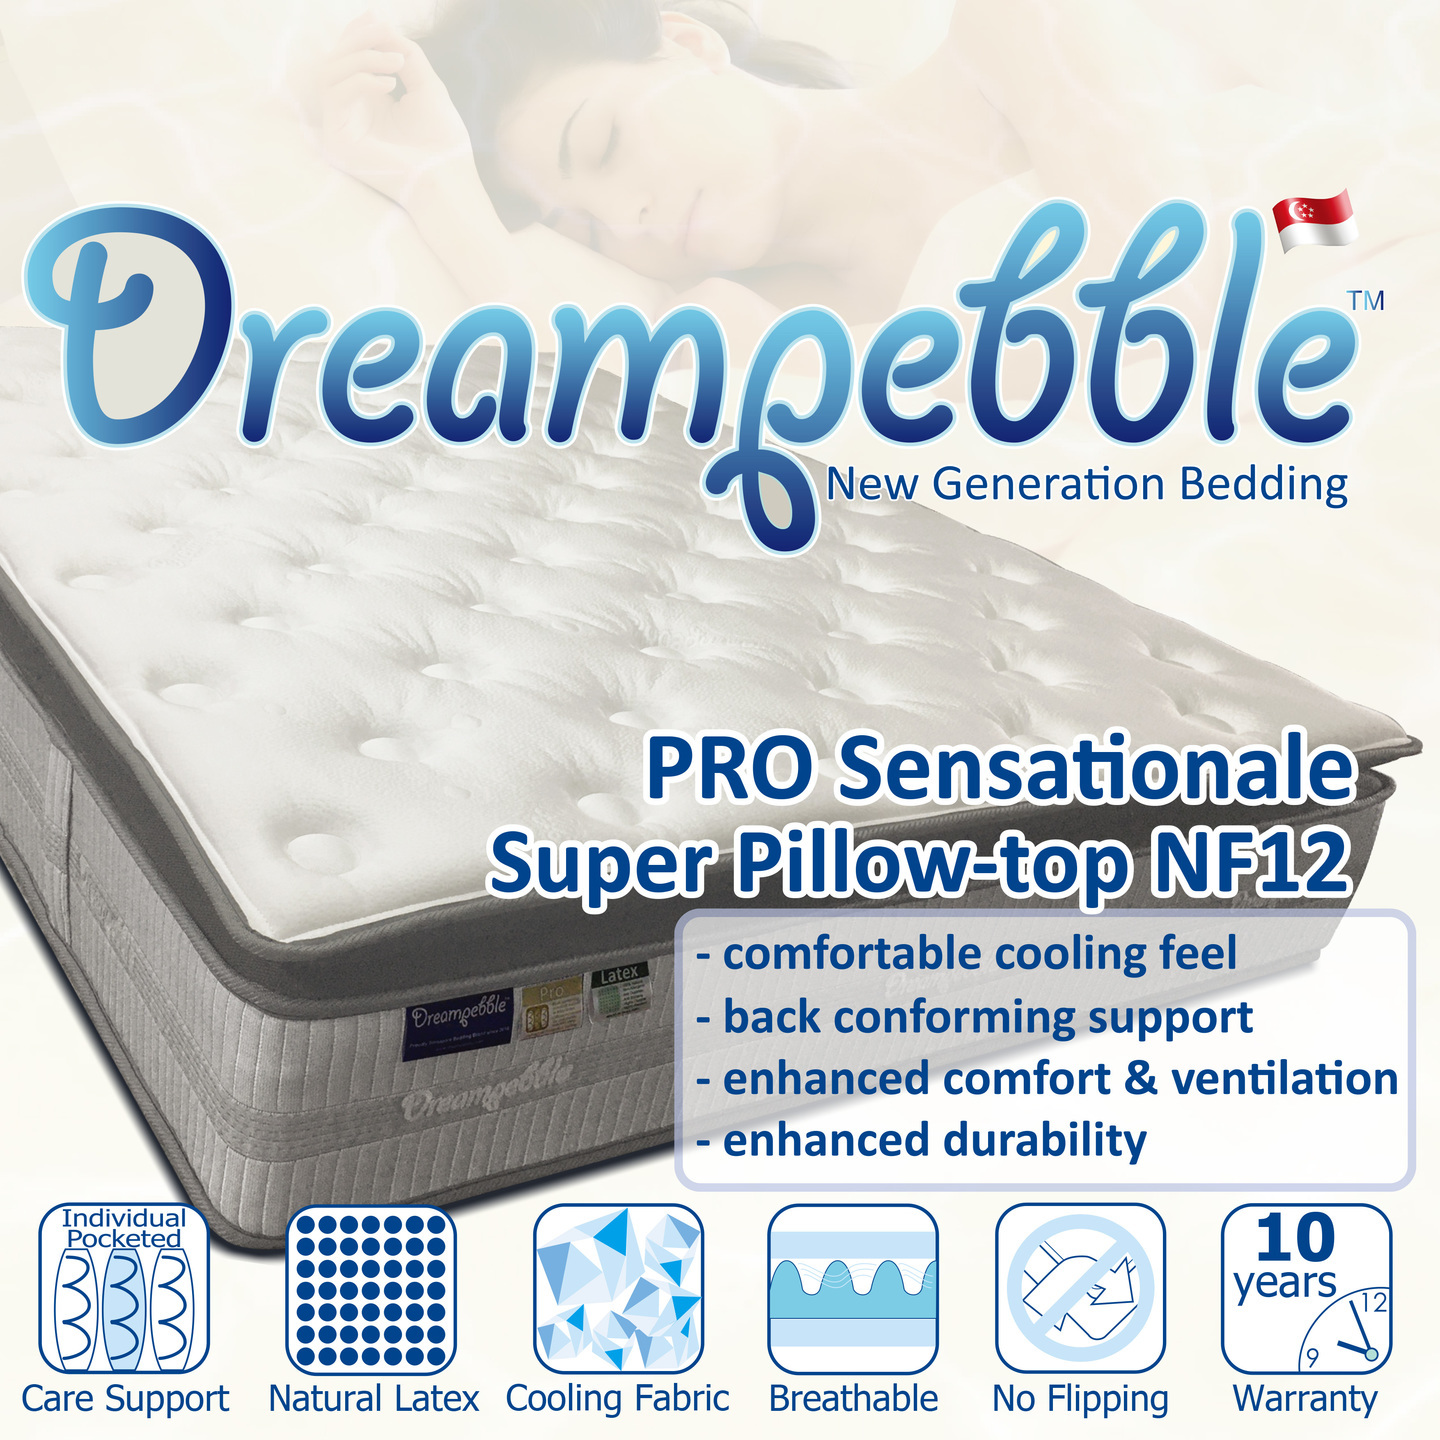 Dreampebble Pro Sensationale NF12 Super Pillow-top